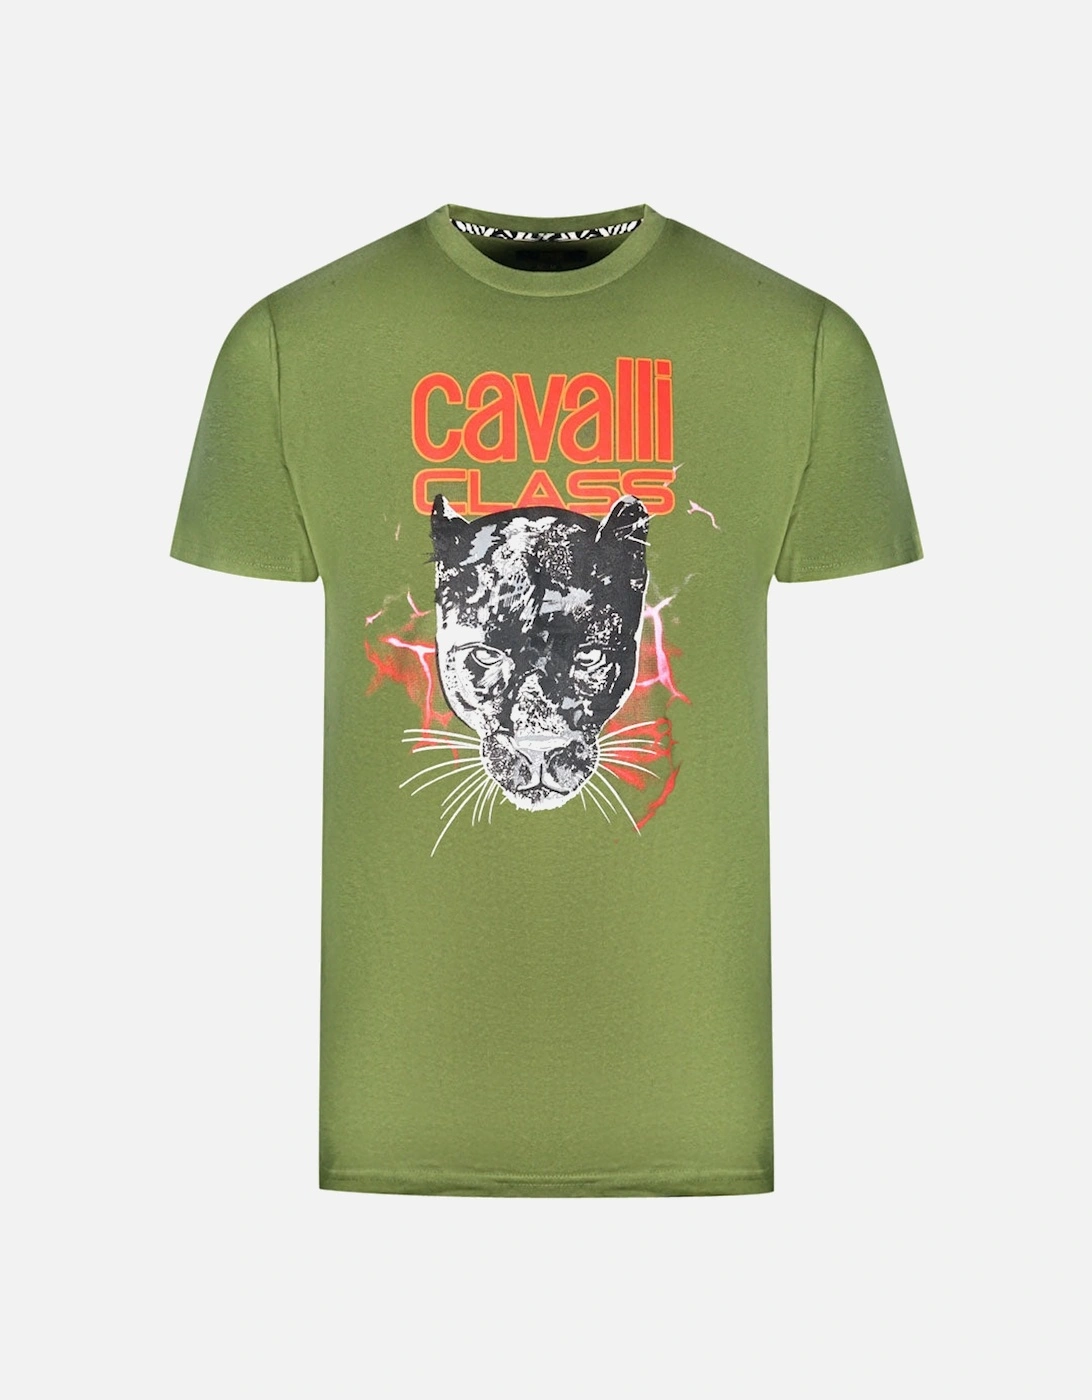 Cavalli Class Lightning Panther Design Green T-Shirt, 3 of 2